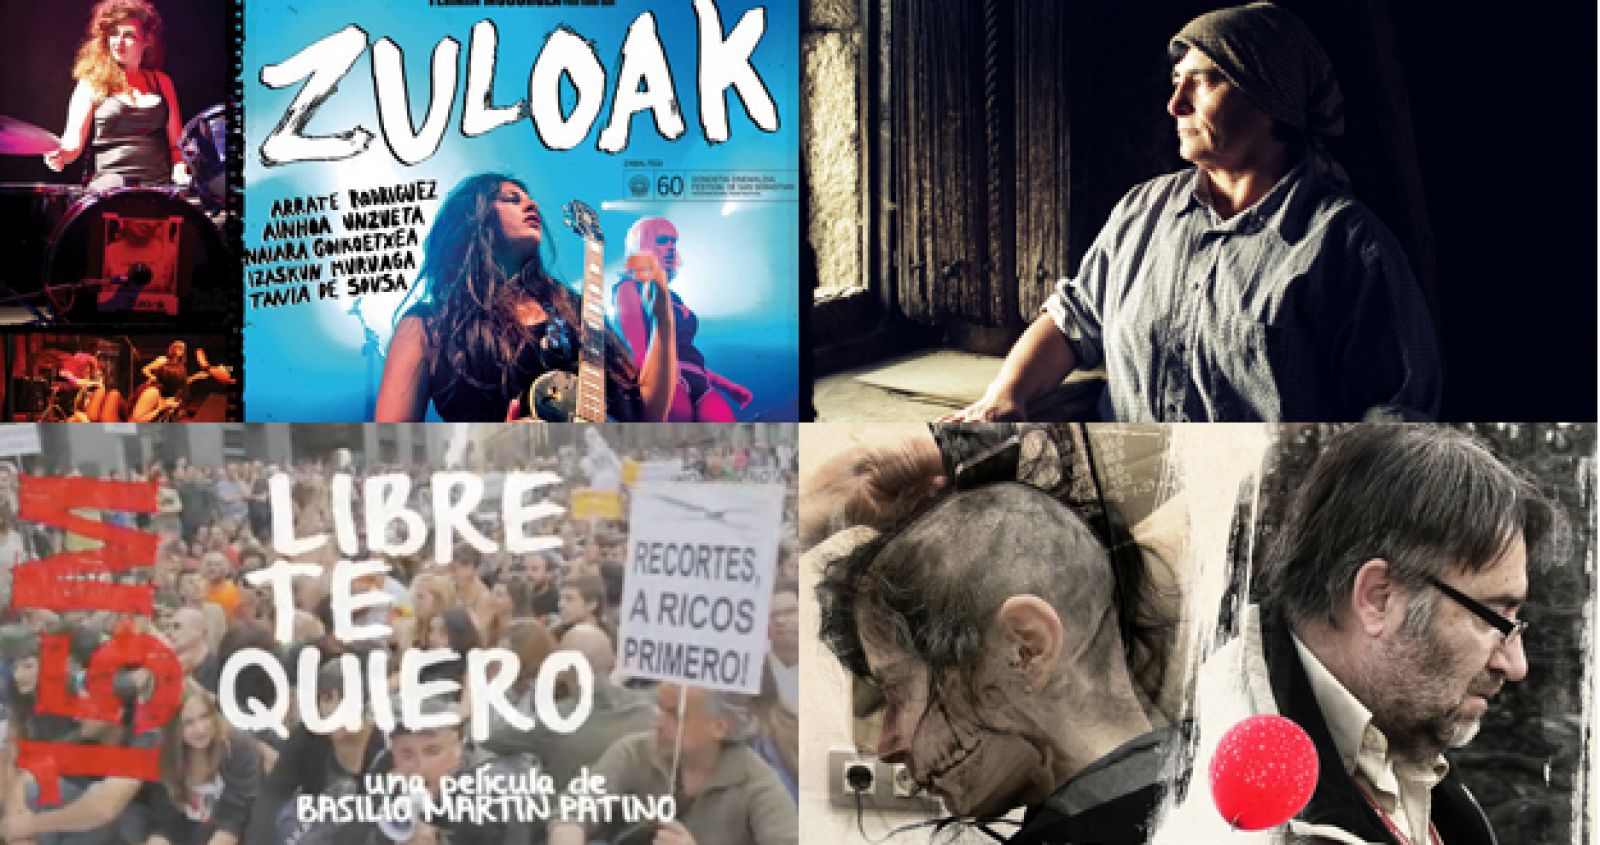 Algunas de las olvidadas en las nominaciones de los Goya: 'Los Increíbles', de David Valero, 'Zuloak', '15M-Libre te quiero' o 'Arraianos'.